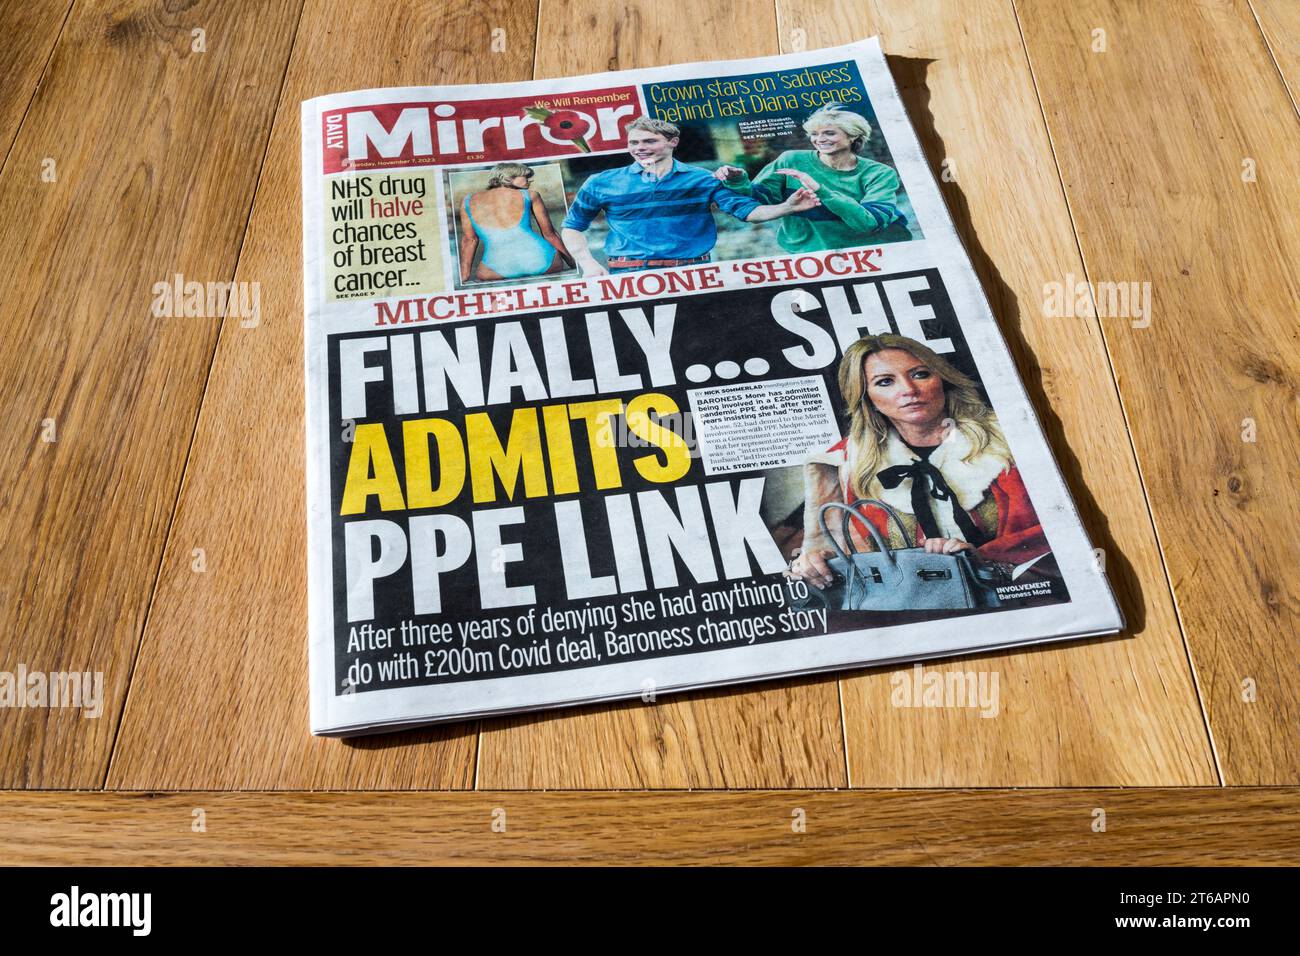 7 de noviembre de 2023. El titular en Daily Mirror lee finalmente ... Ella admite PPE LINK. Se relaciona con Baroness Mone enlaces a PPE Medpro. Foto de stock